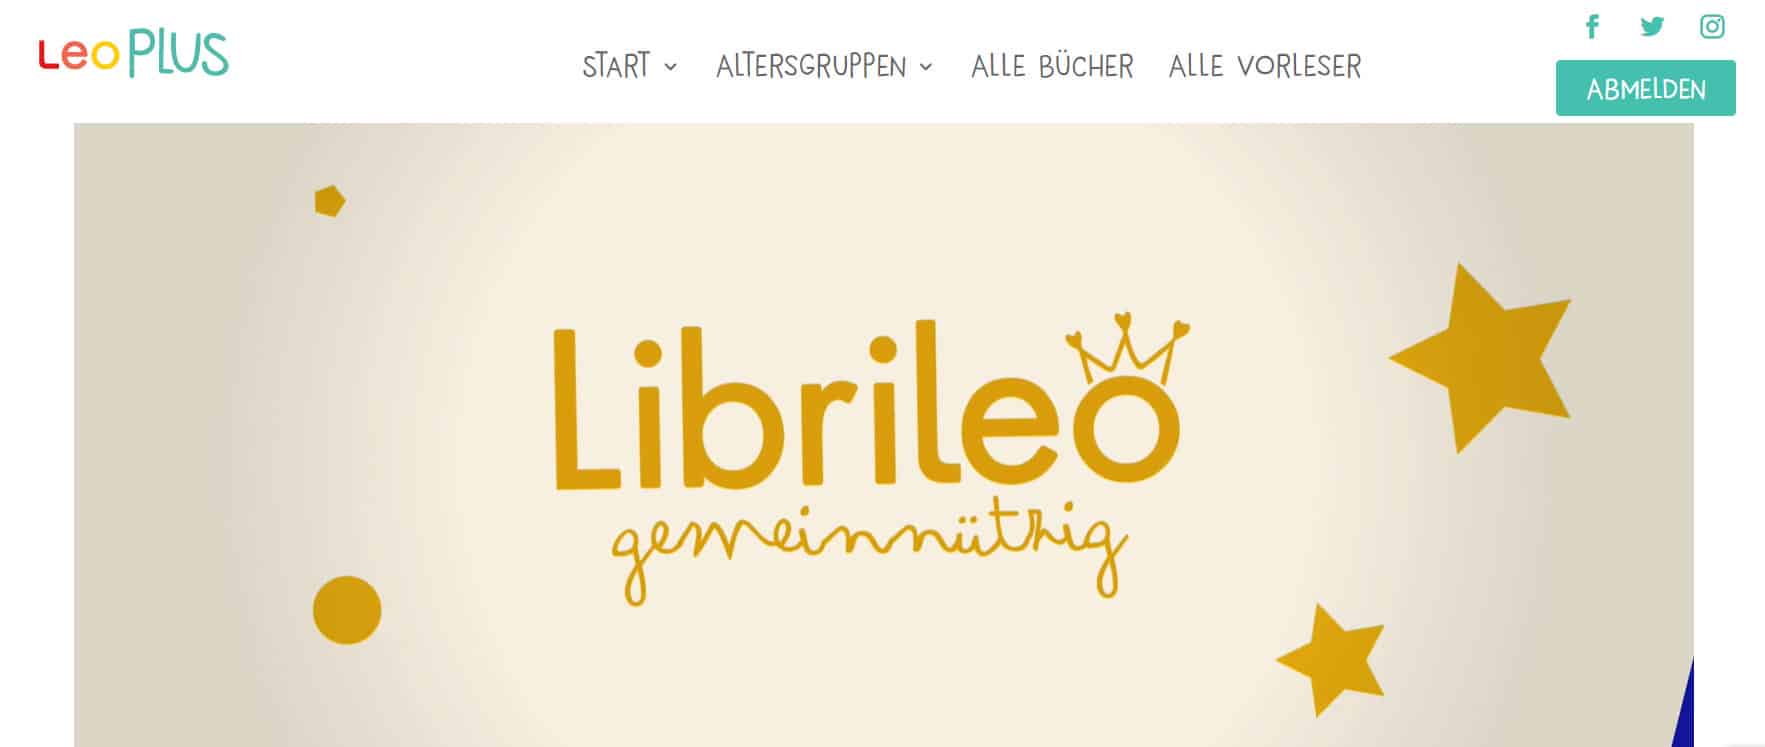 Librileo gemeinnützig_SC der Webseite mit Genehmigung der Betreiber_grossekoepfe.de